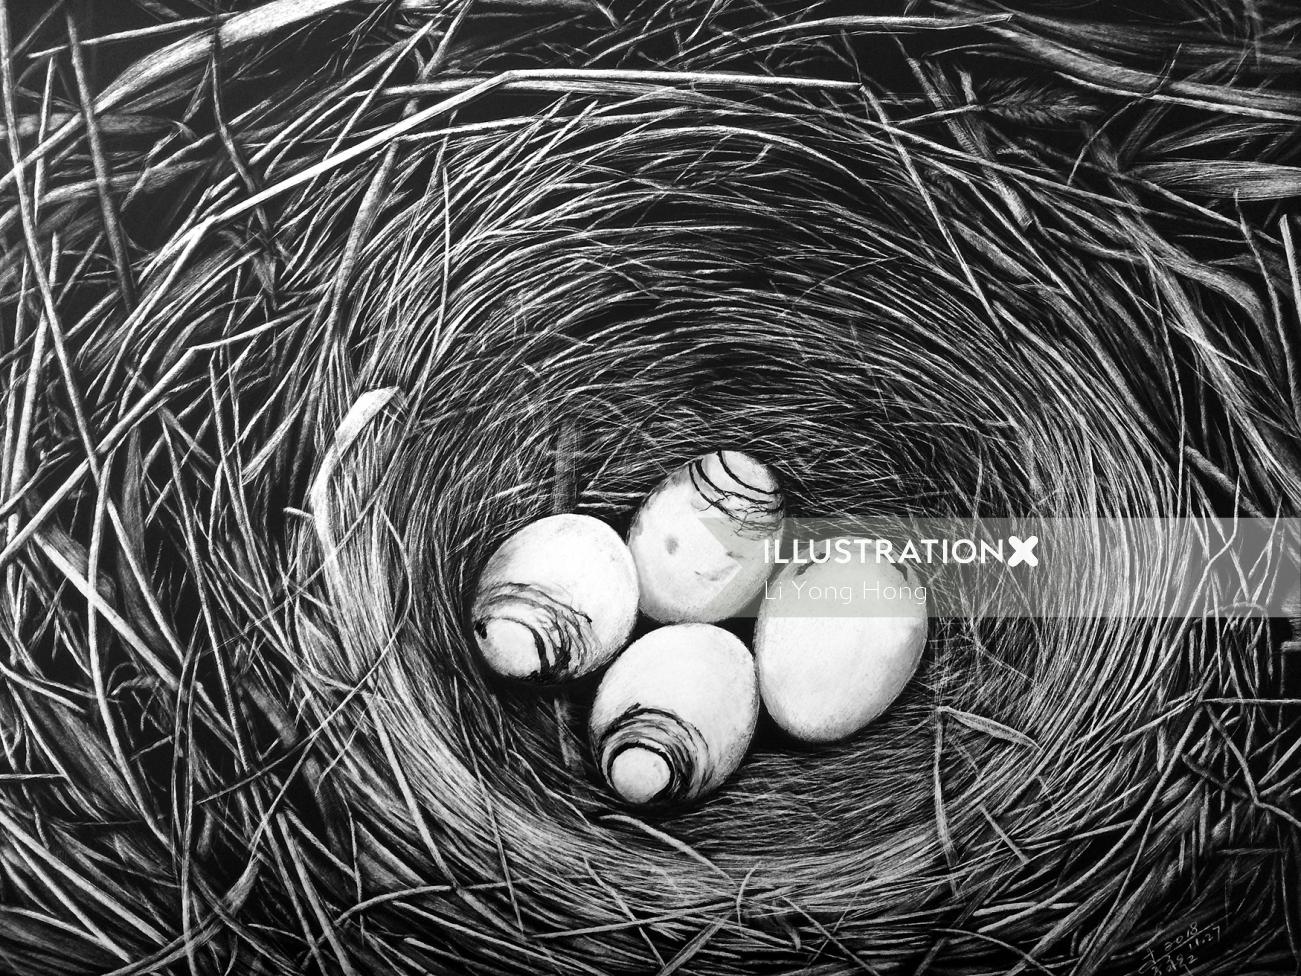 Ilustração da natureza do ninho de pássaros com ovos